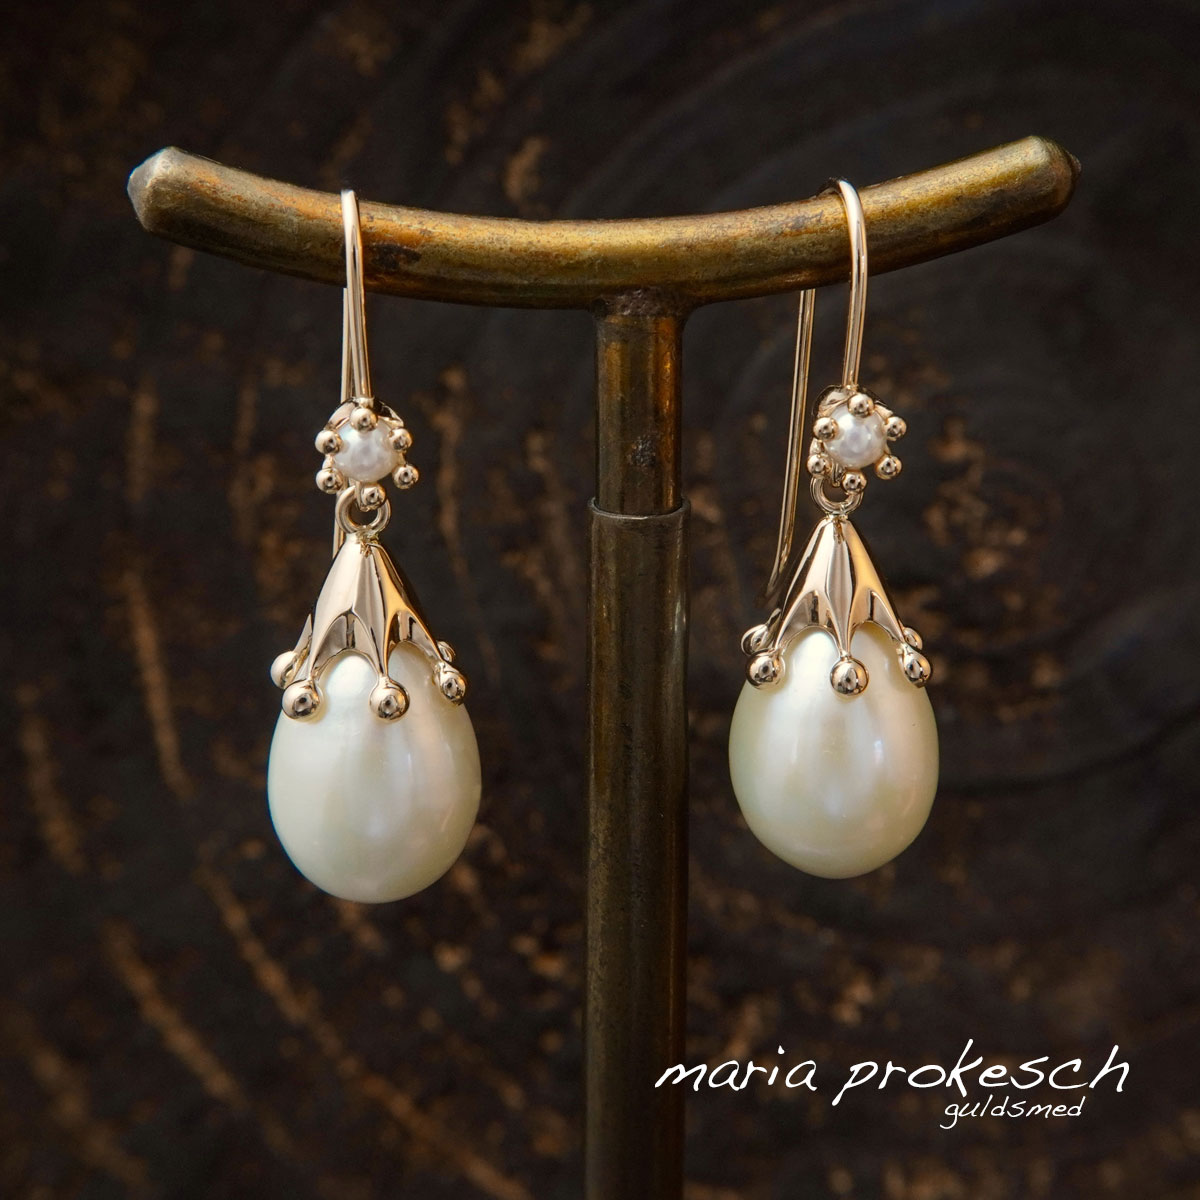 Ørehængere med hvide perler og 18 kt guld kroner i anderledes design. Eventyrlige smykker fra guldsmed Maria Prokesch